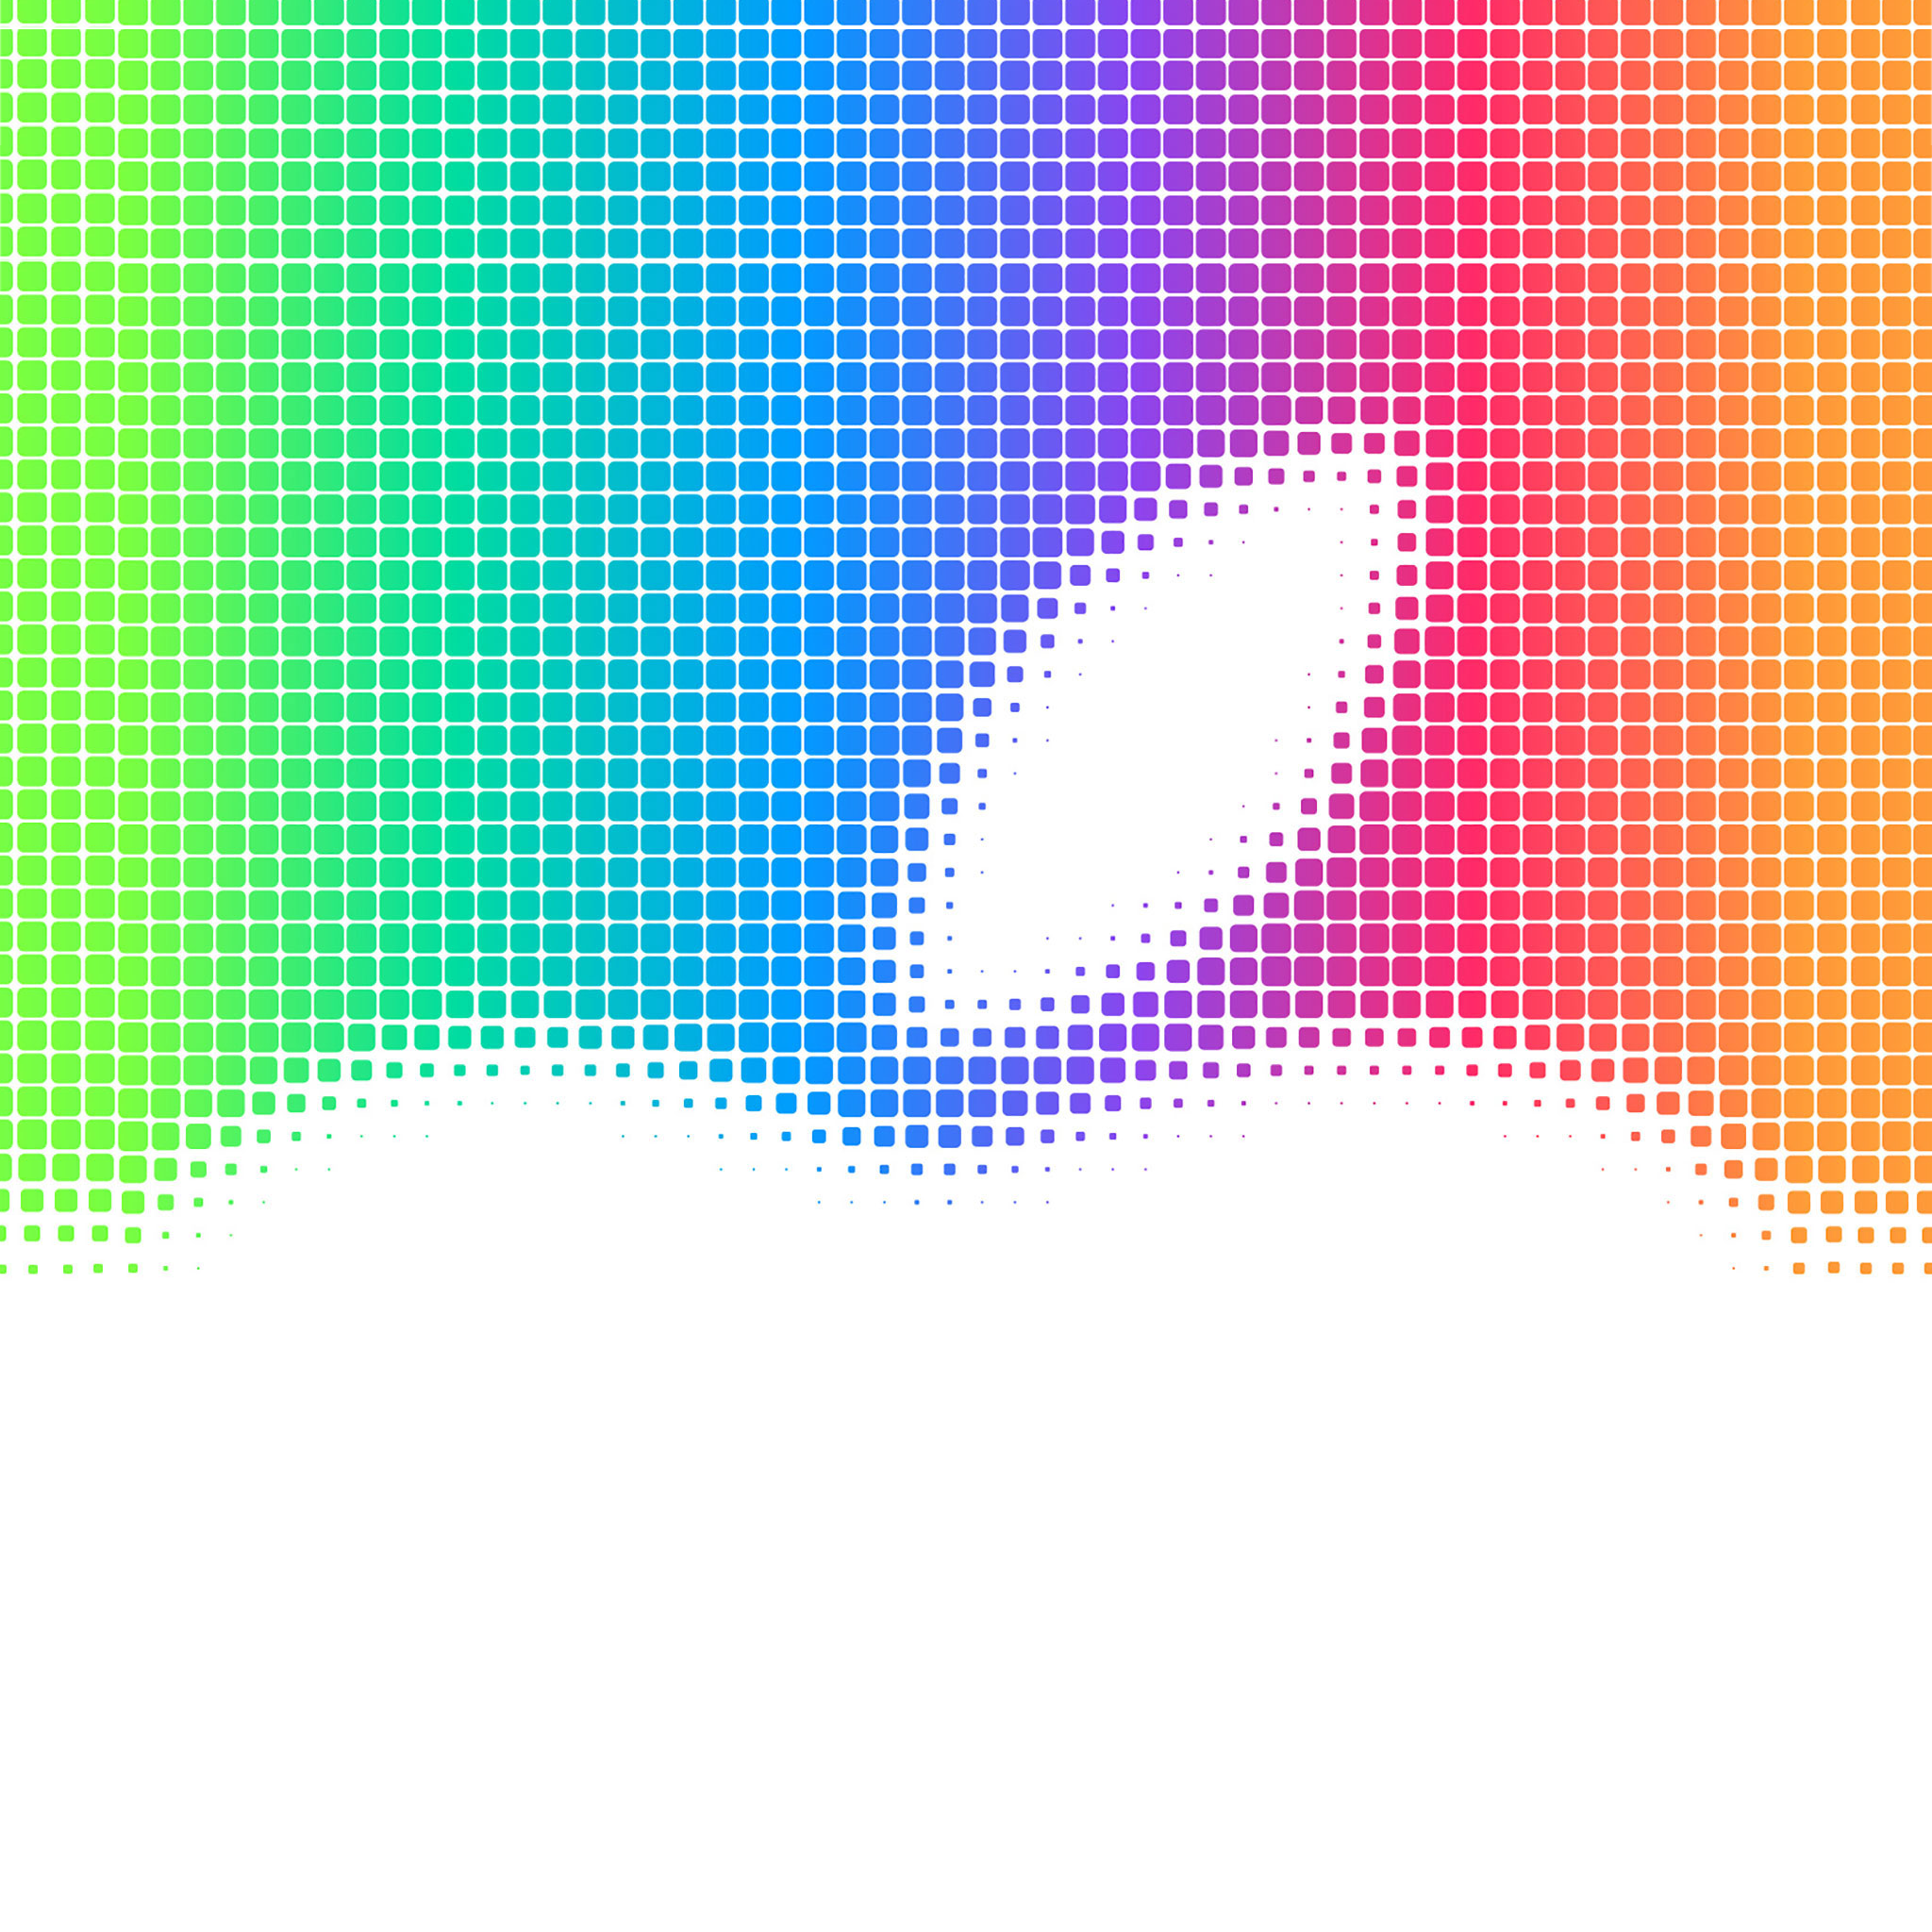 WWDC 14: Descarga los fondos de pantalla para iPhone y iPad